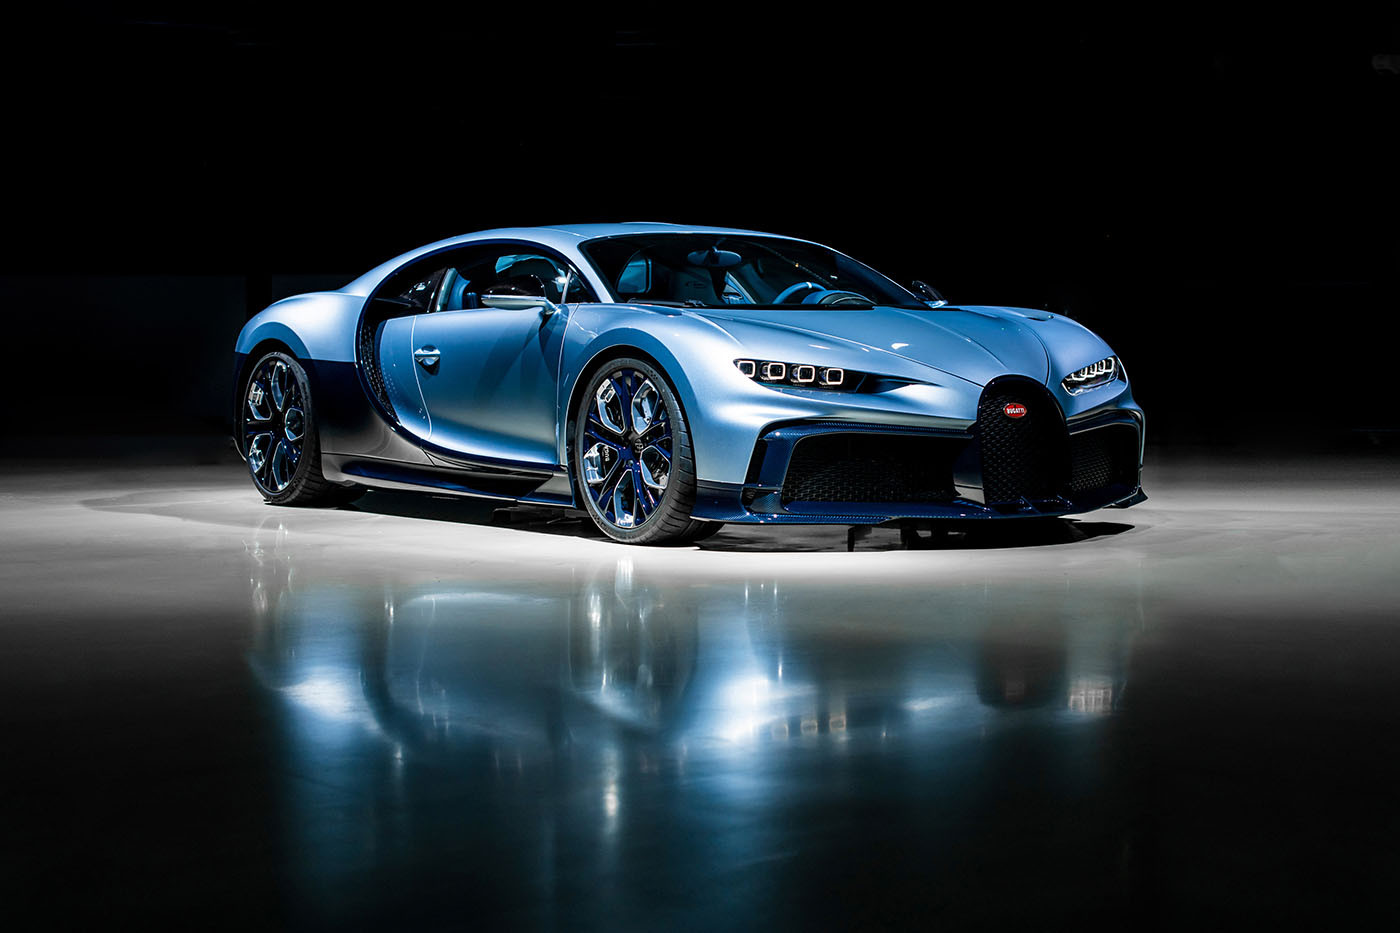 Αυτή η Bugatti έχει 1.500 ίππους και κοστίζει 10,7 εκατομμύρια δολάρια!